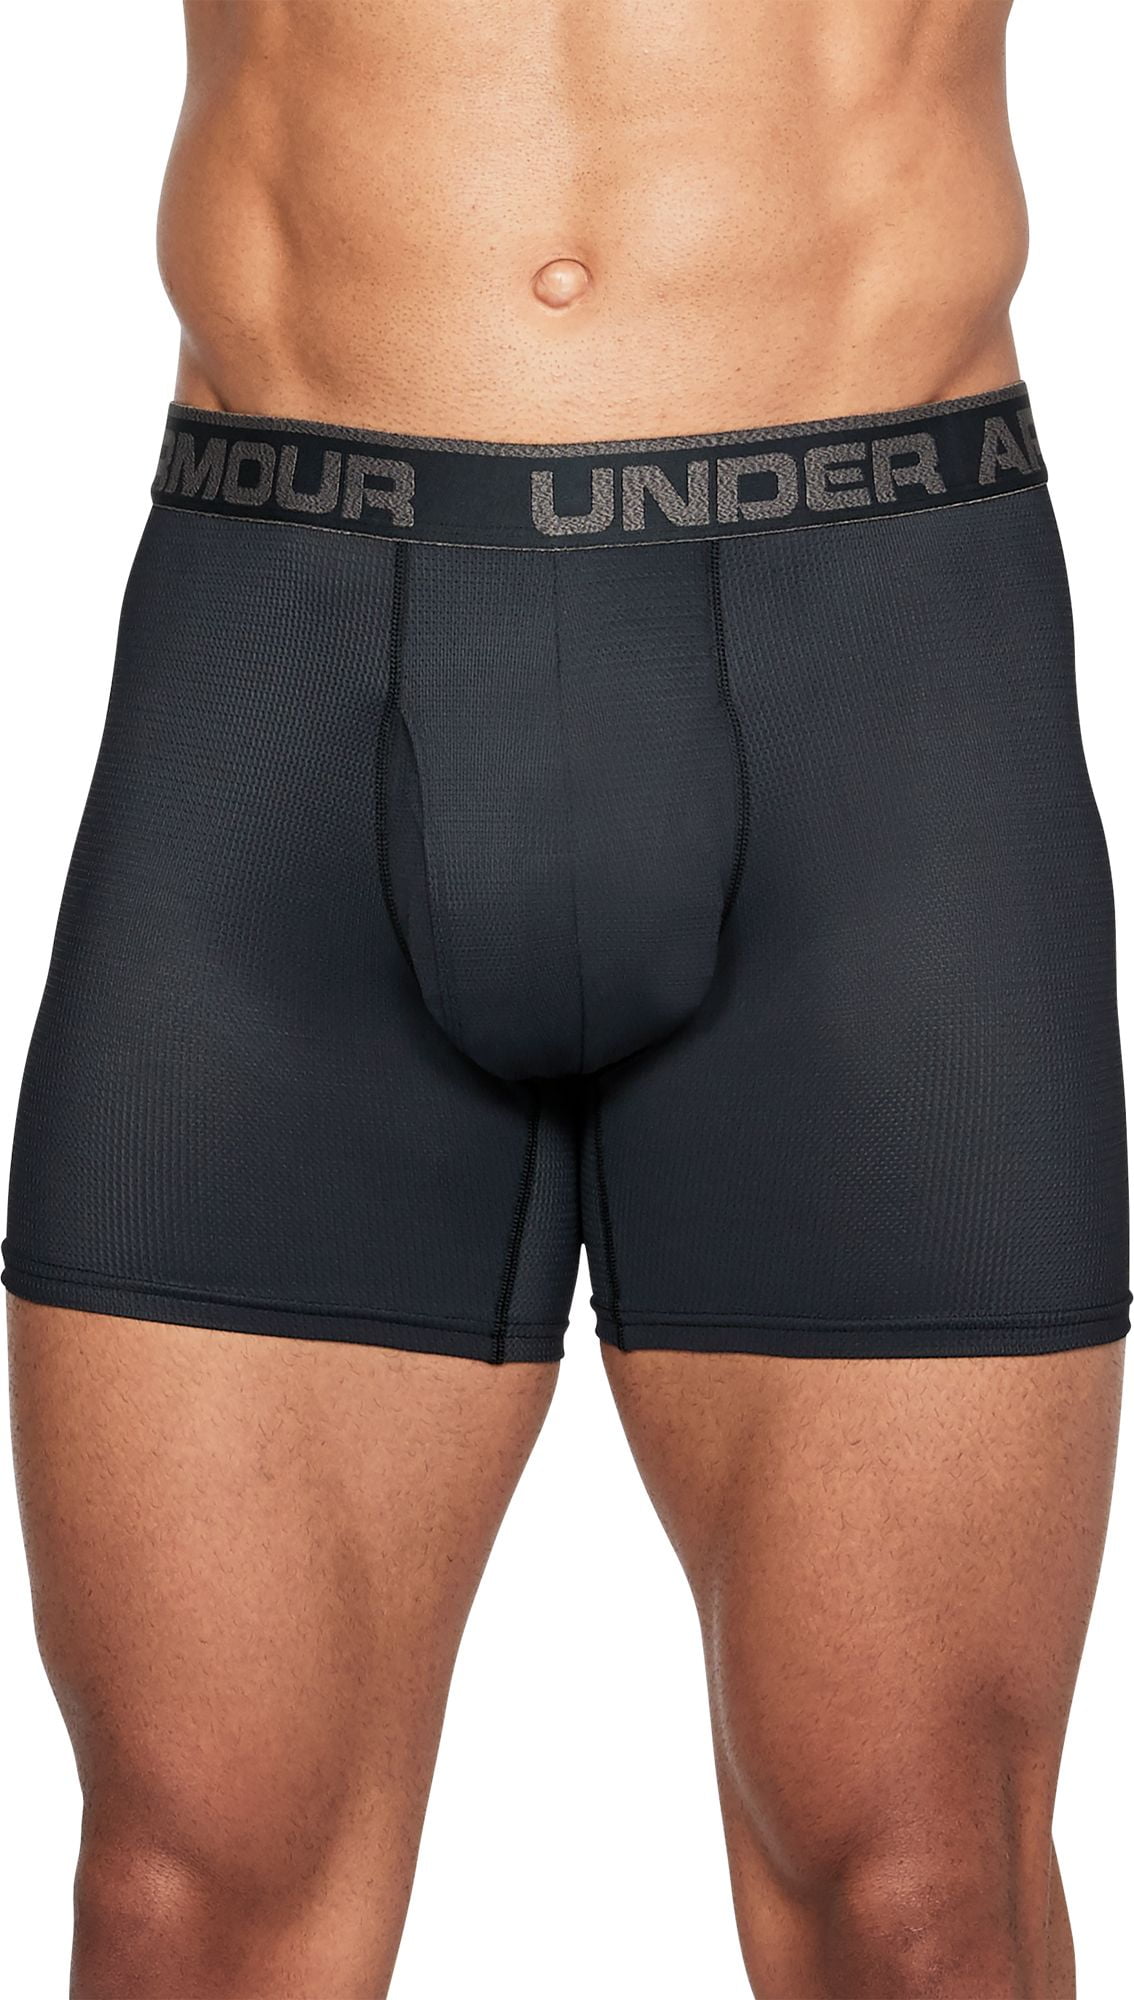 Under Armour Mens Underwear - Walmart.com